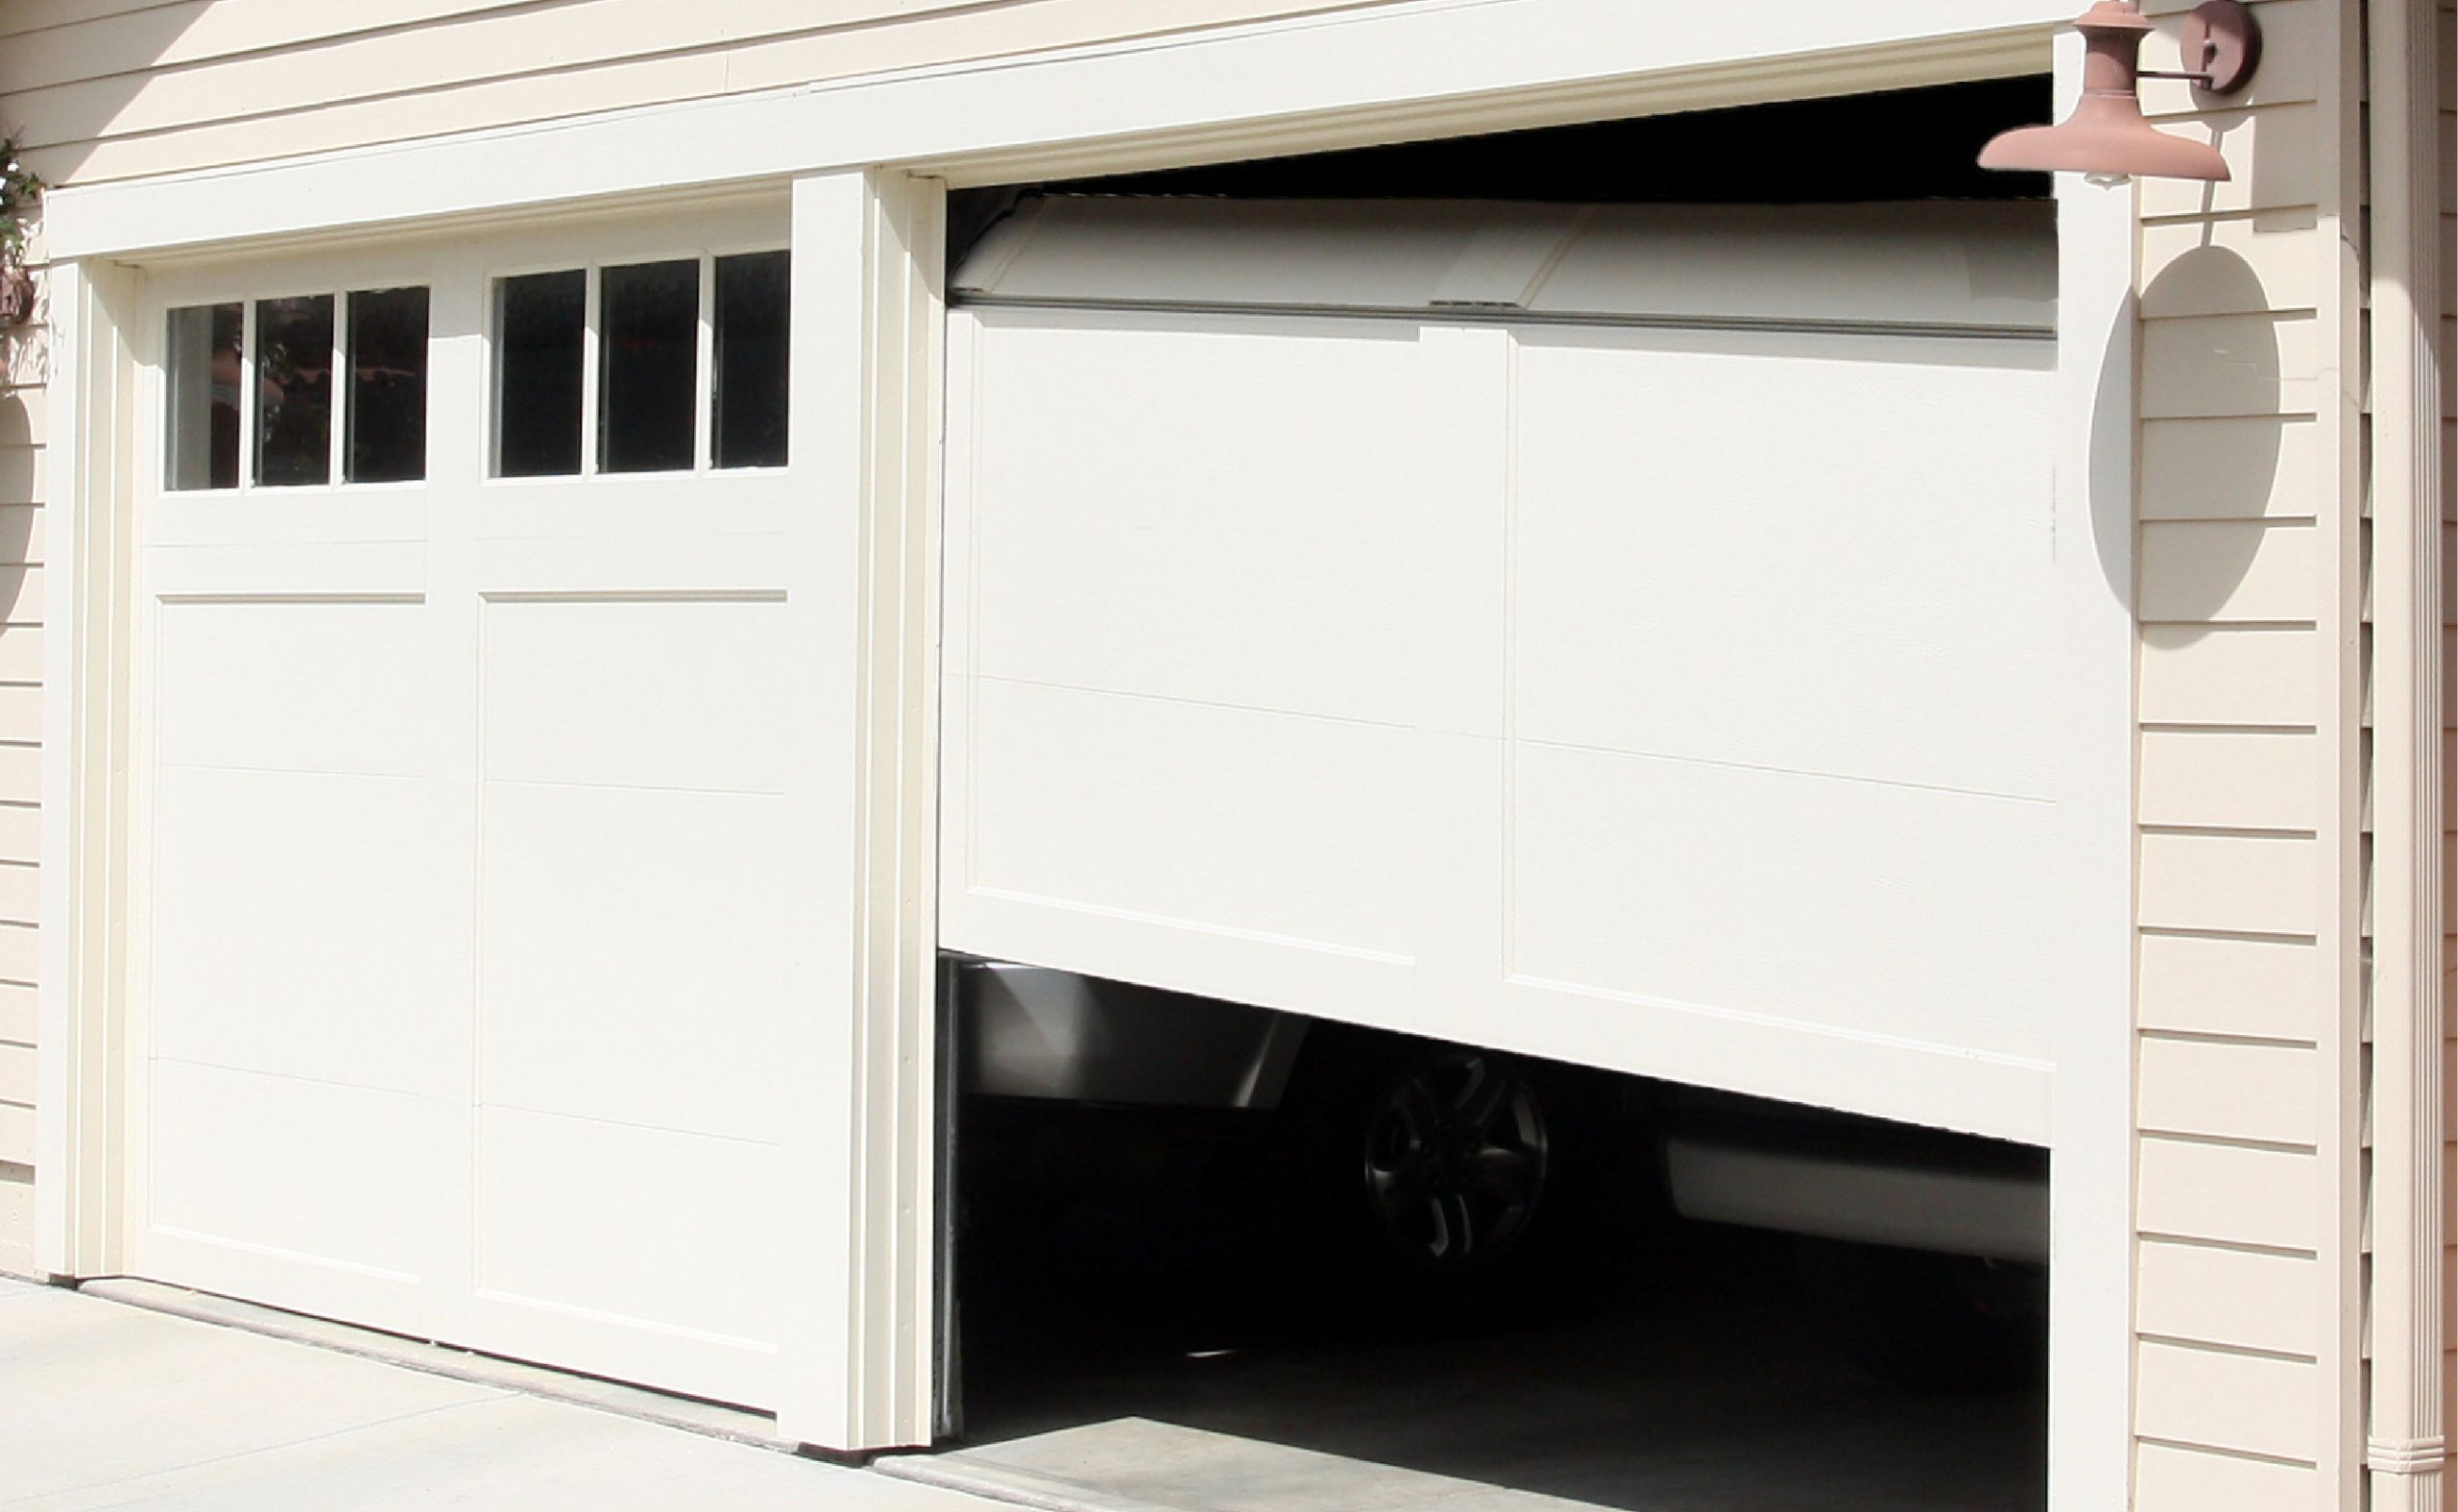 Repairing Garage Door Repair Etobicoke Horizontal Tracks